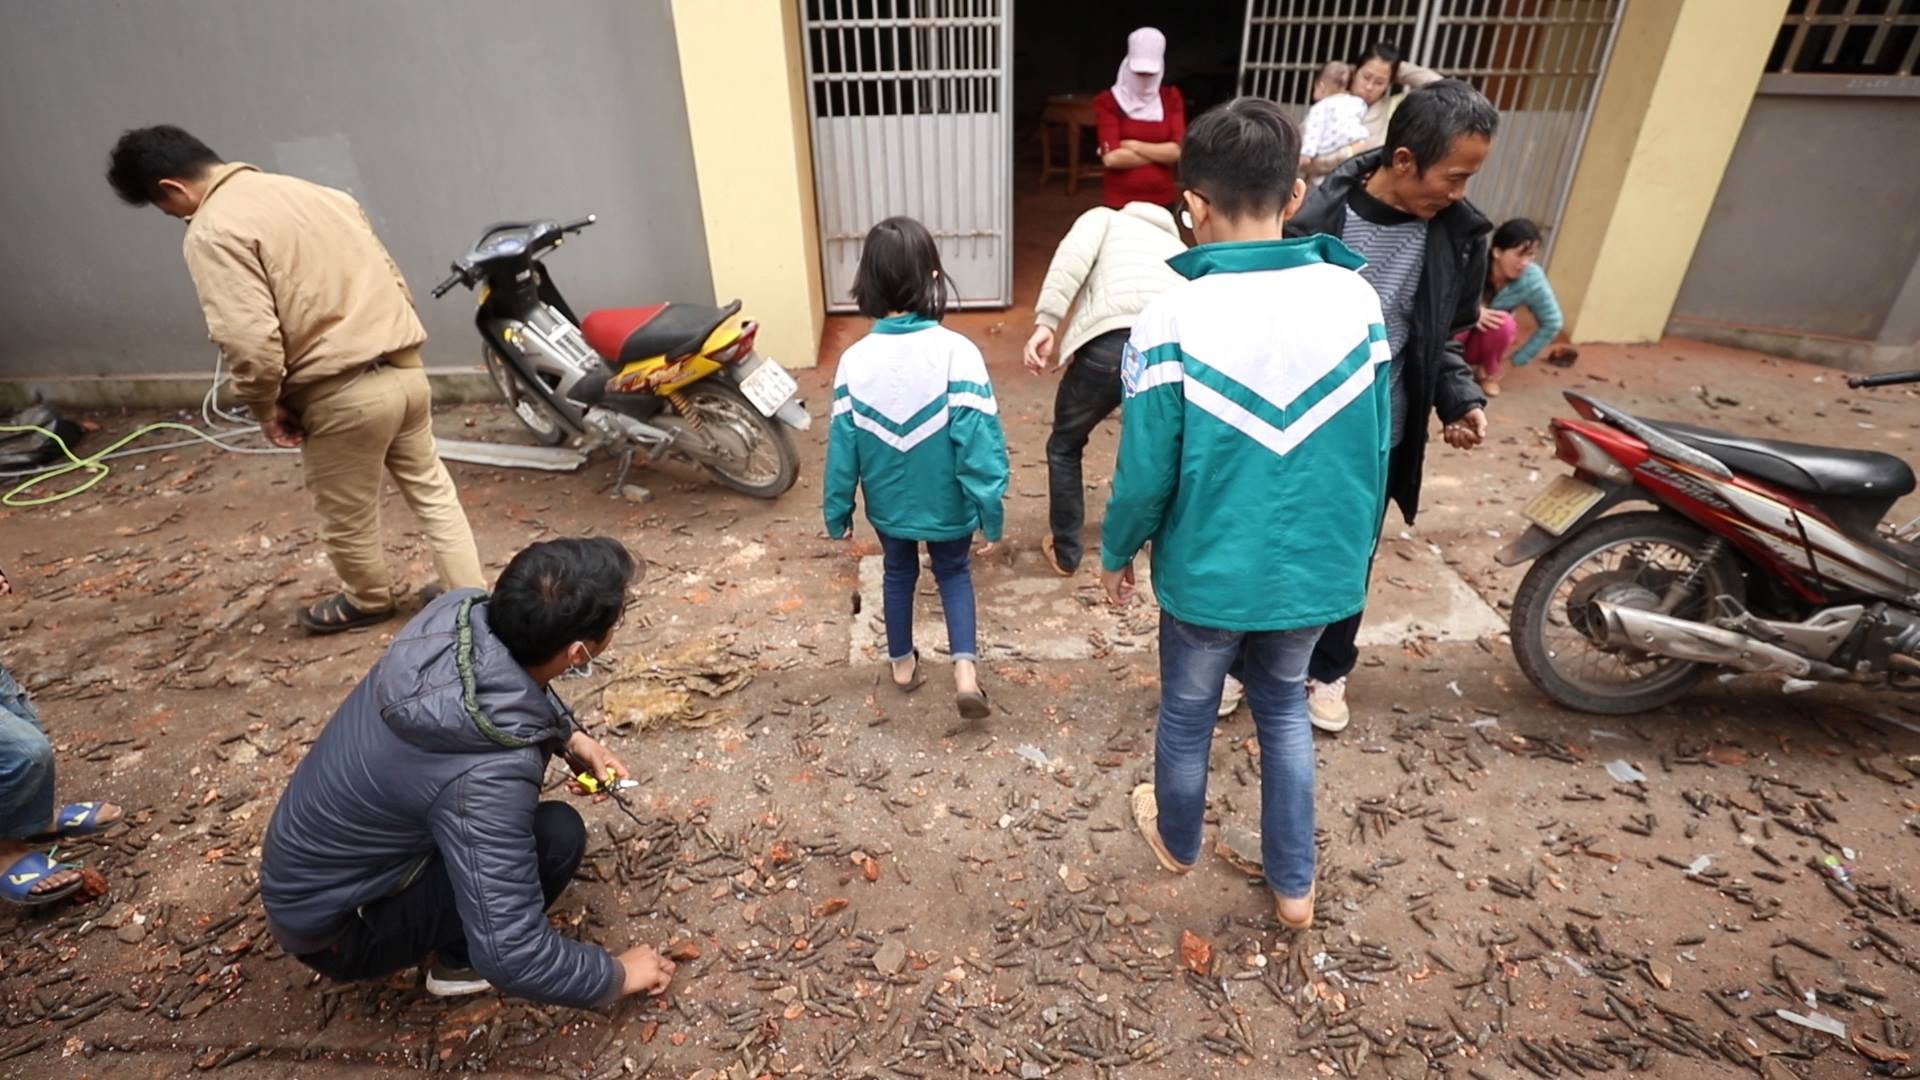 Người lớn, trẻ nhỏ lẻn vào hiện trường vụ nổ ở Bắc Ninh rồi vô tư nhặt vỏ đạn vương vãi bất chấp nguy hiểm - Ảnh 5